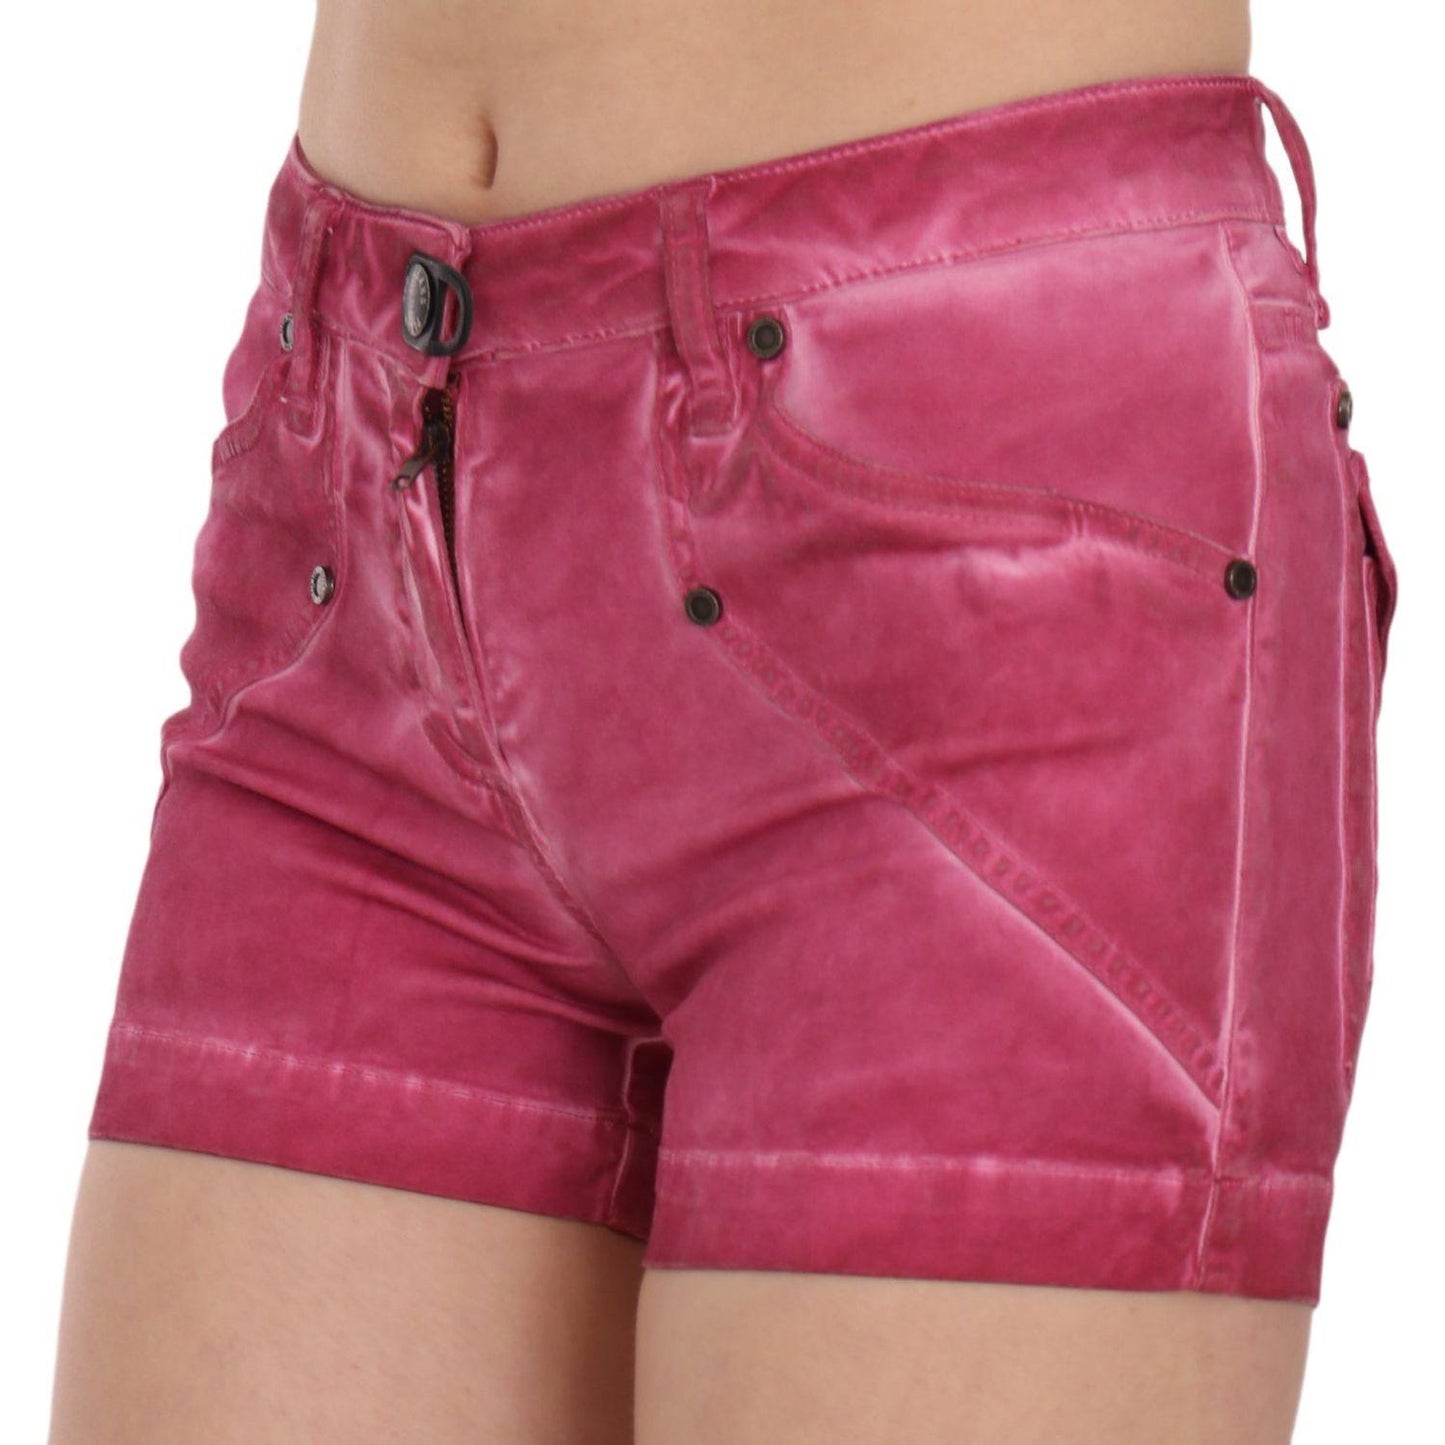 PLEIN SUD Chic Pink Washed Denim Shorts pink-mid-waist-cotton-mini-denim-shorts